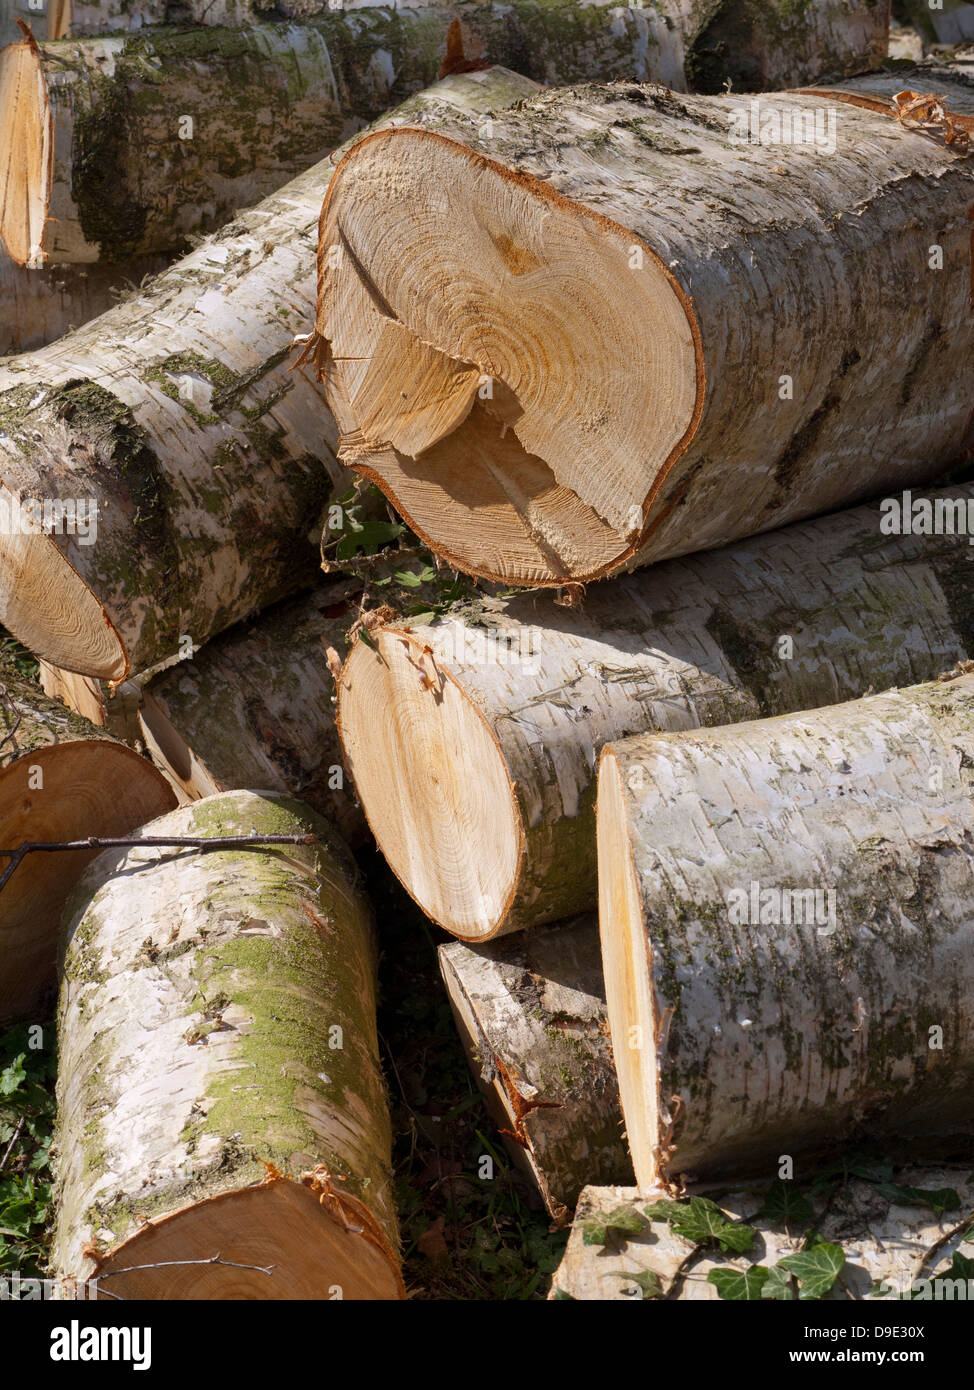 Uk, Cheshire, pile of freshly harvested timber Stock Photo